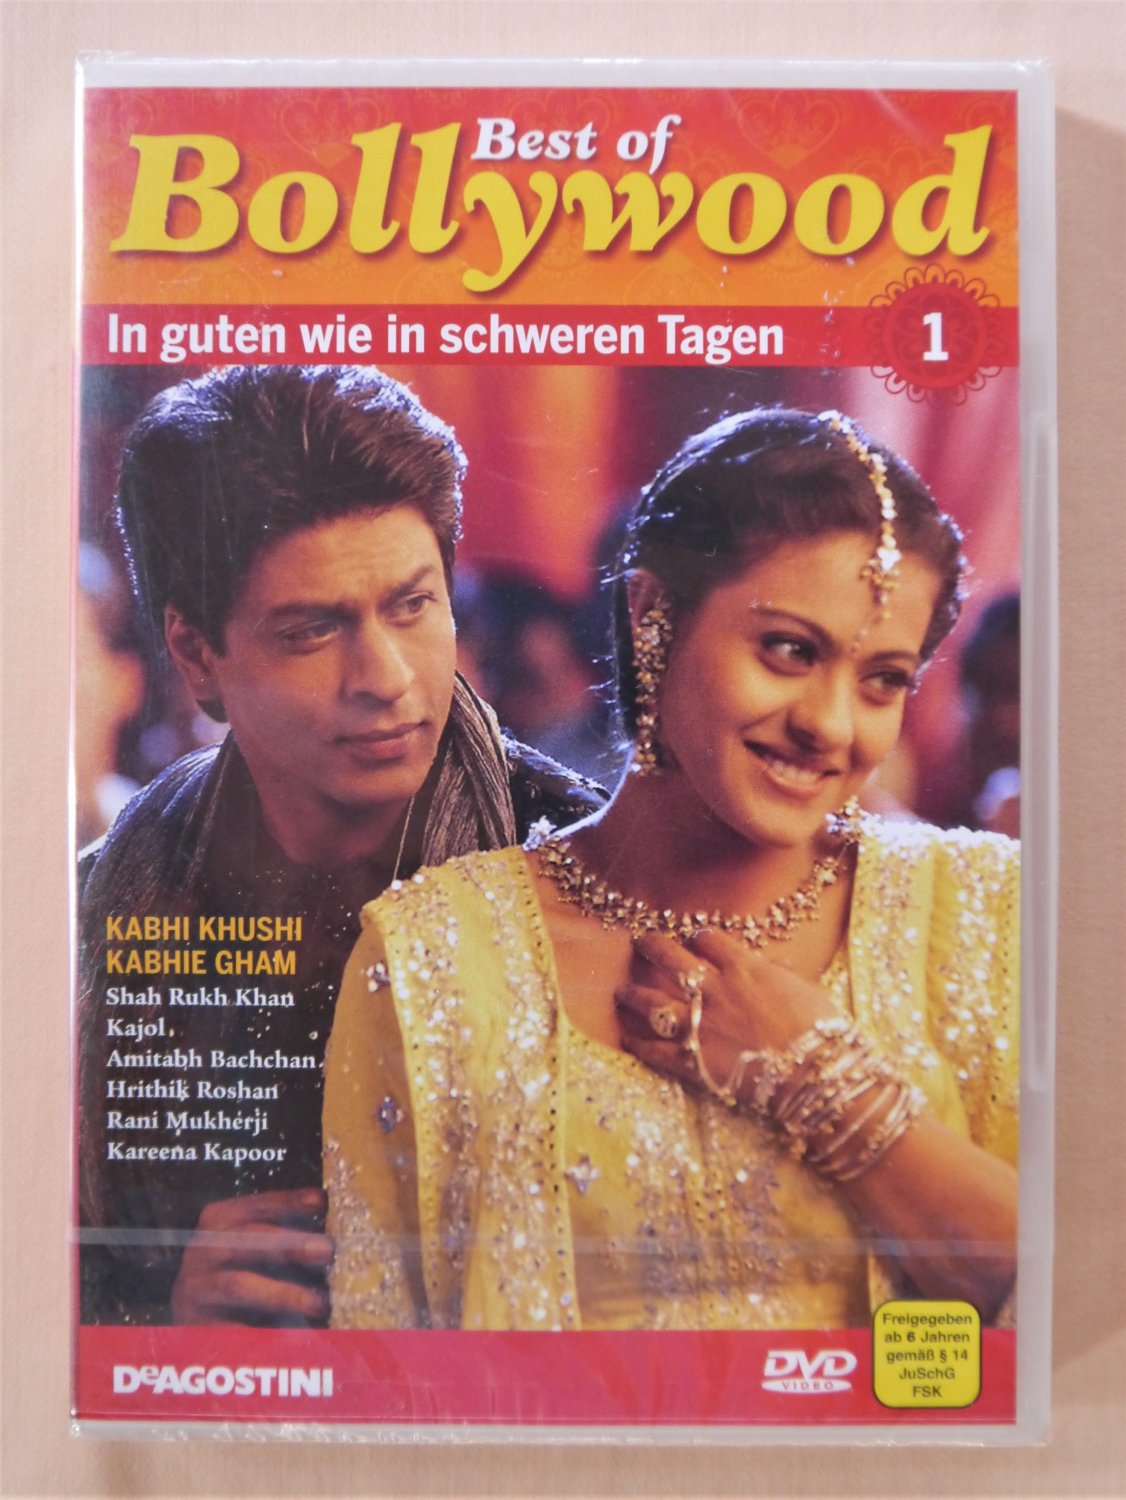 In guten wie in schweren Tagen - Best of Bollywood“ – Filme gebraucht & neu  kaufen